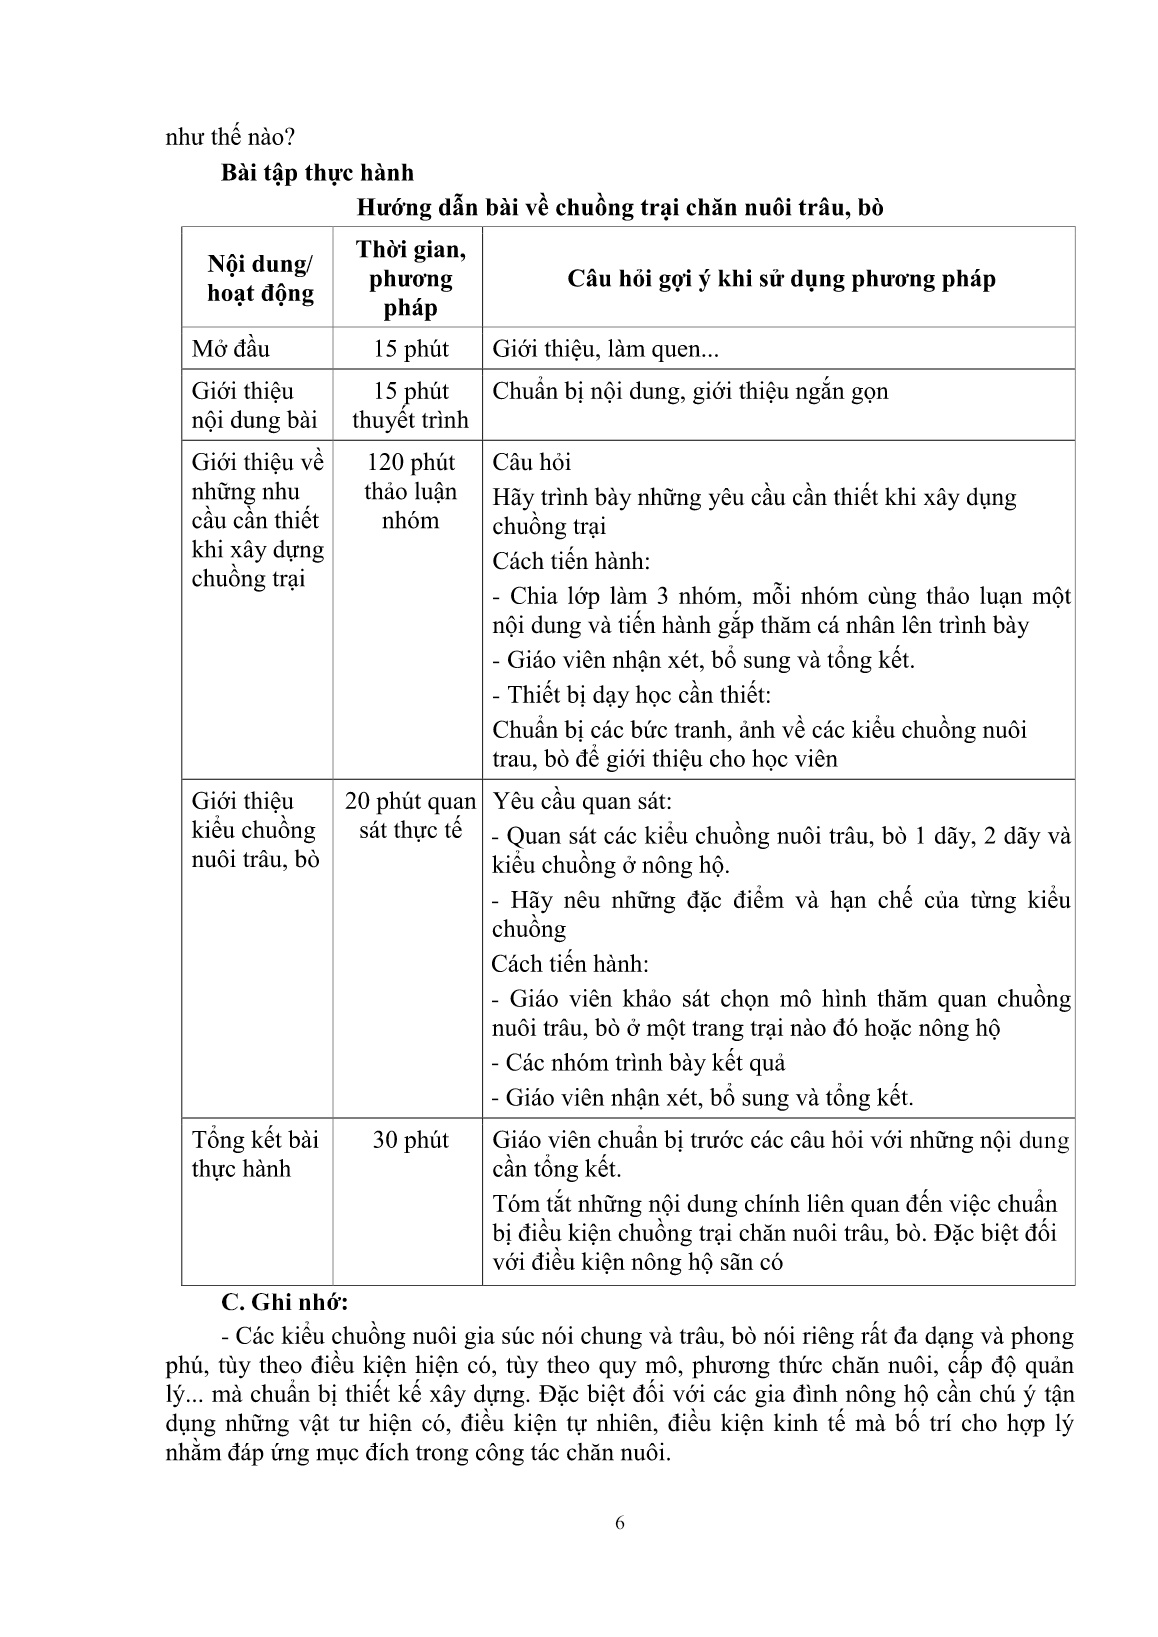 Giáo trình mô đun Nuôi trâu, bò thịt (Trình độ: Đào tạo dưới 3 tháng) trang 8